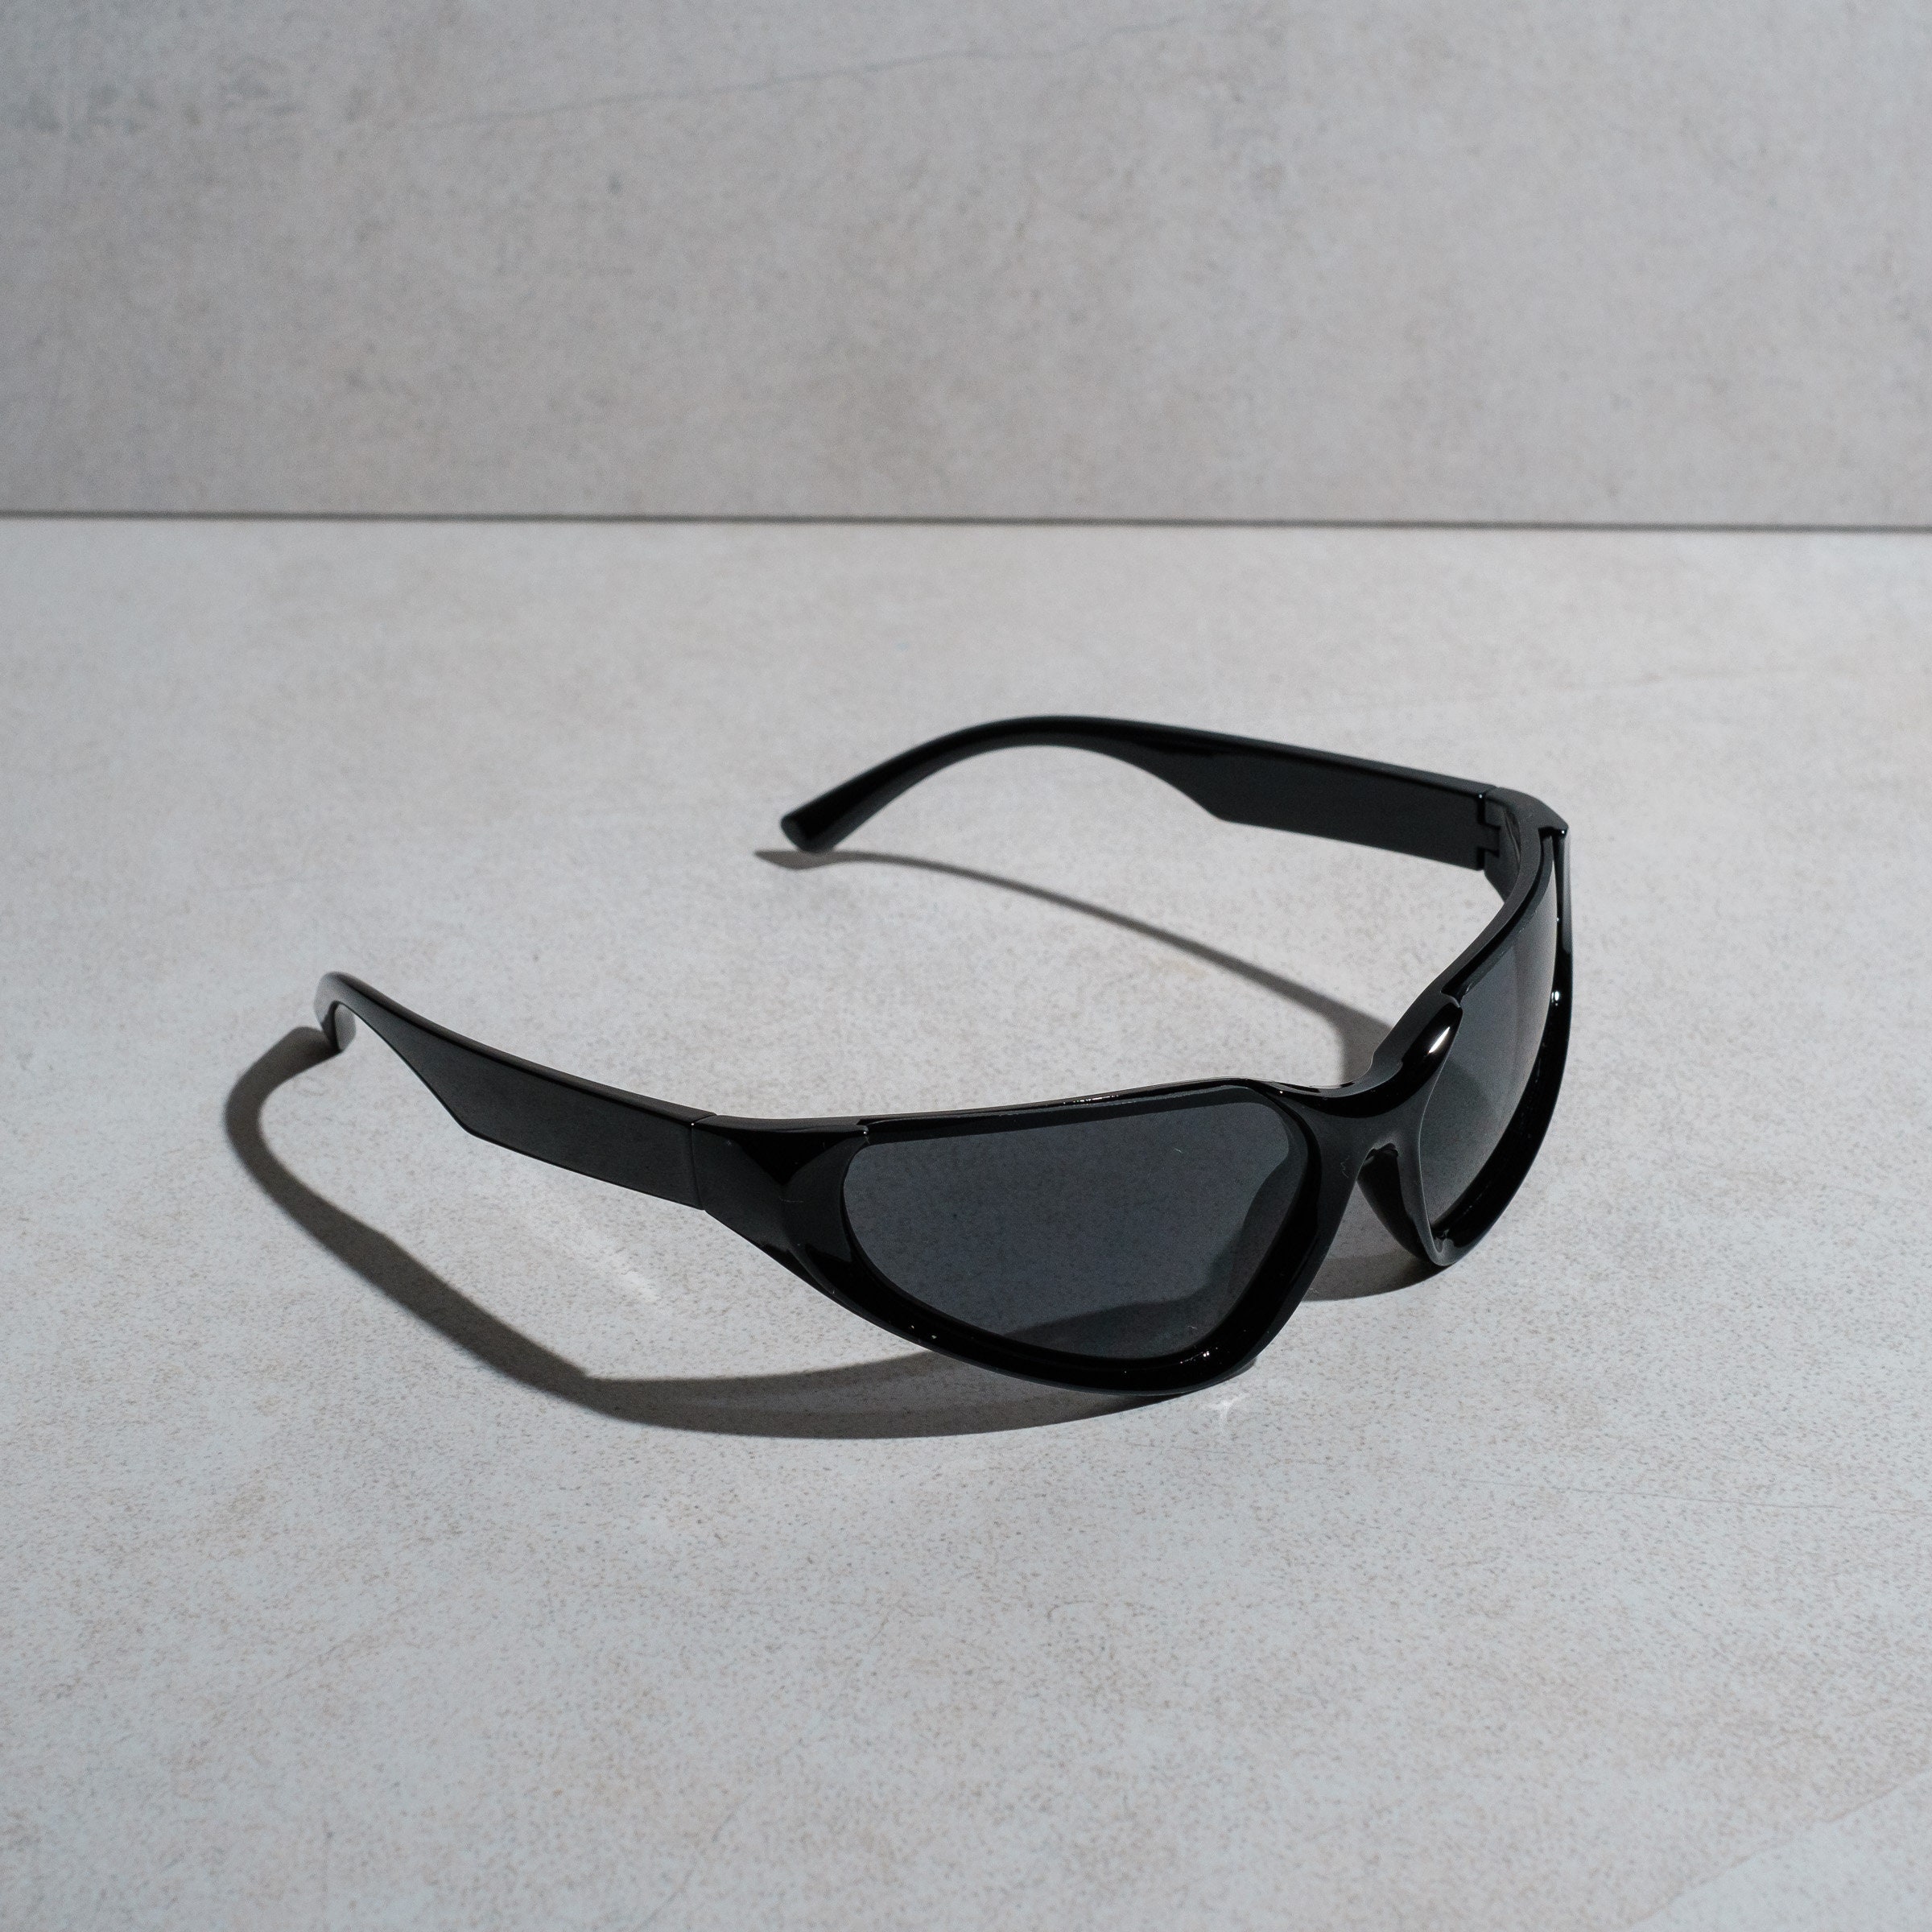 Y2K Cosmic Semi-Rimless Sunglasses in Spy Black on Black